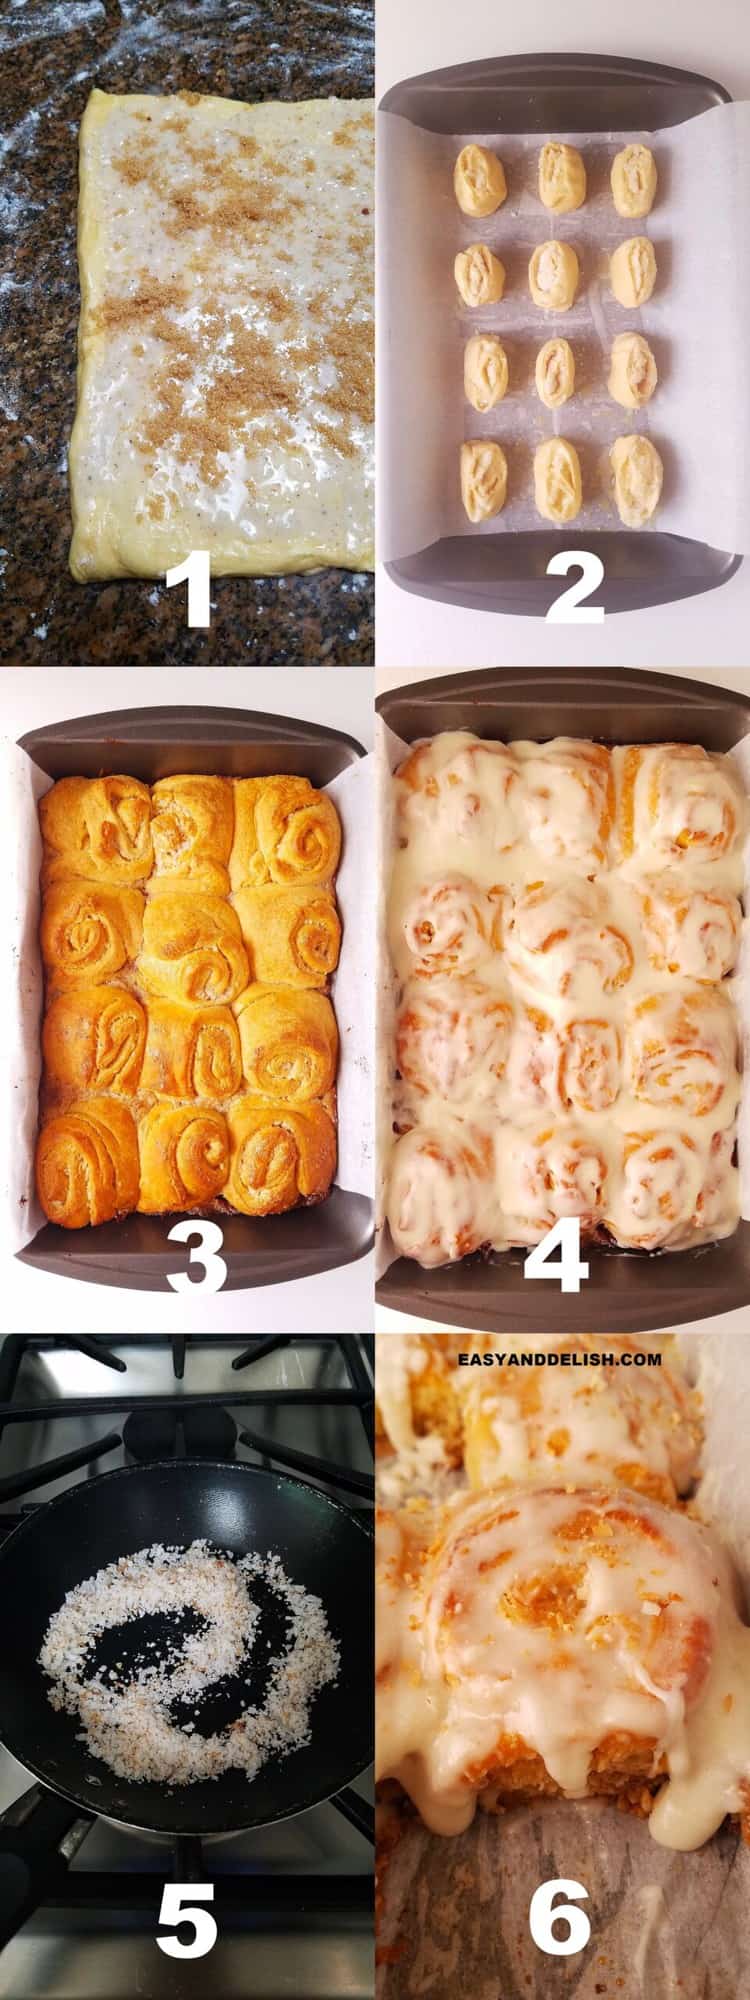 foto colagem mostrando como fazer pão doce em 6 passos